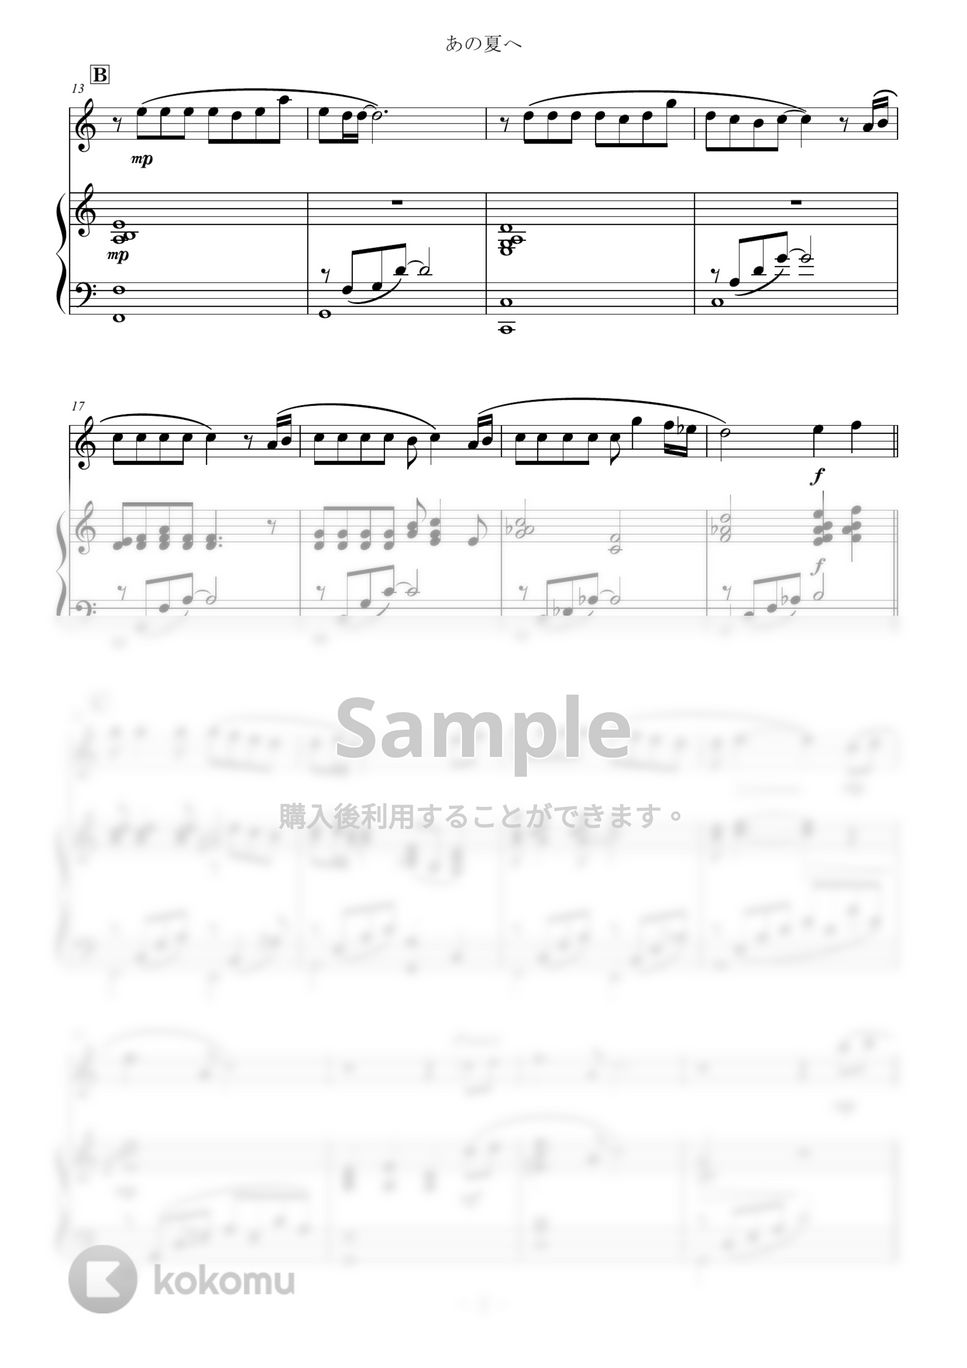 久石譲 - あの夏へ for Violin and Piano / from 千と千尋の神隠し One Summer's Day (スタジオジブリ/千と千尋の神隠し) by Zoe